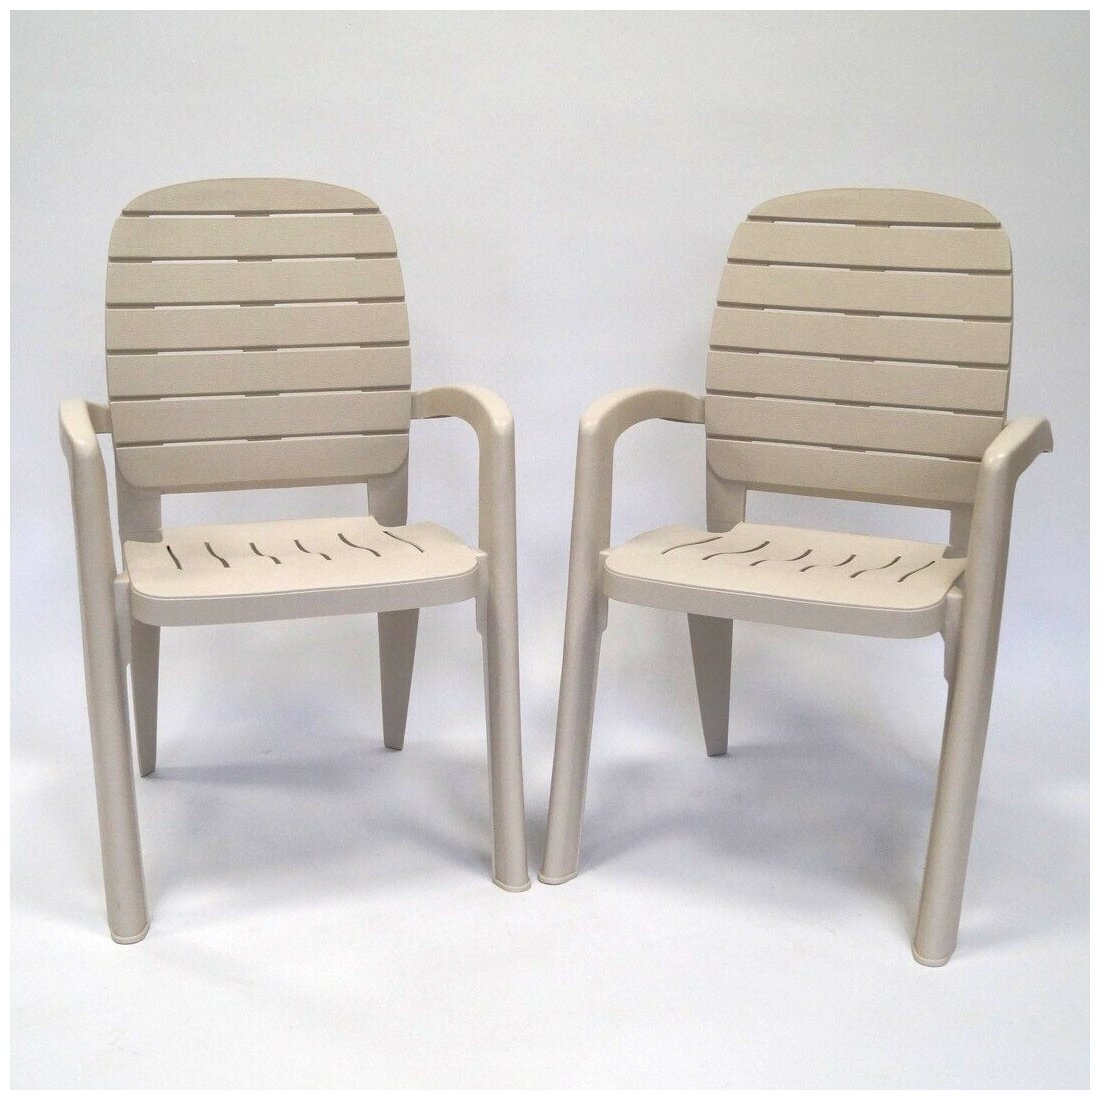 Пластиковые кресла и стулья